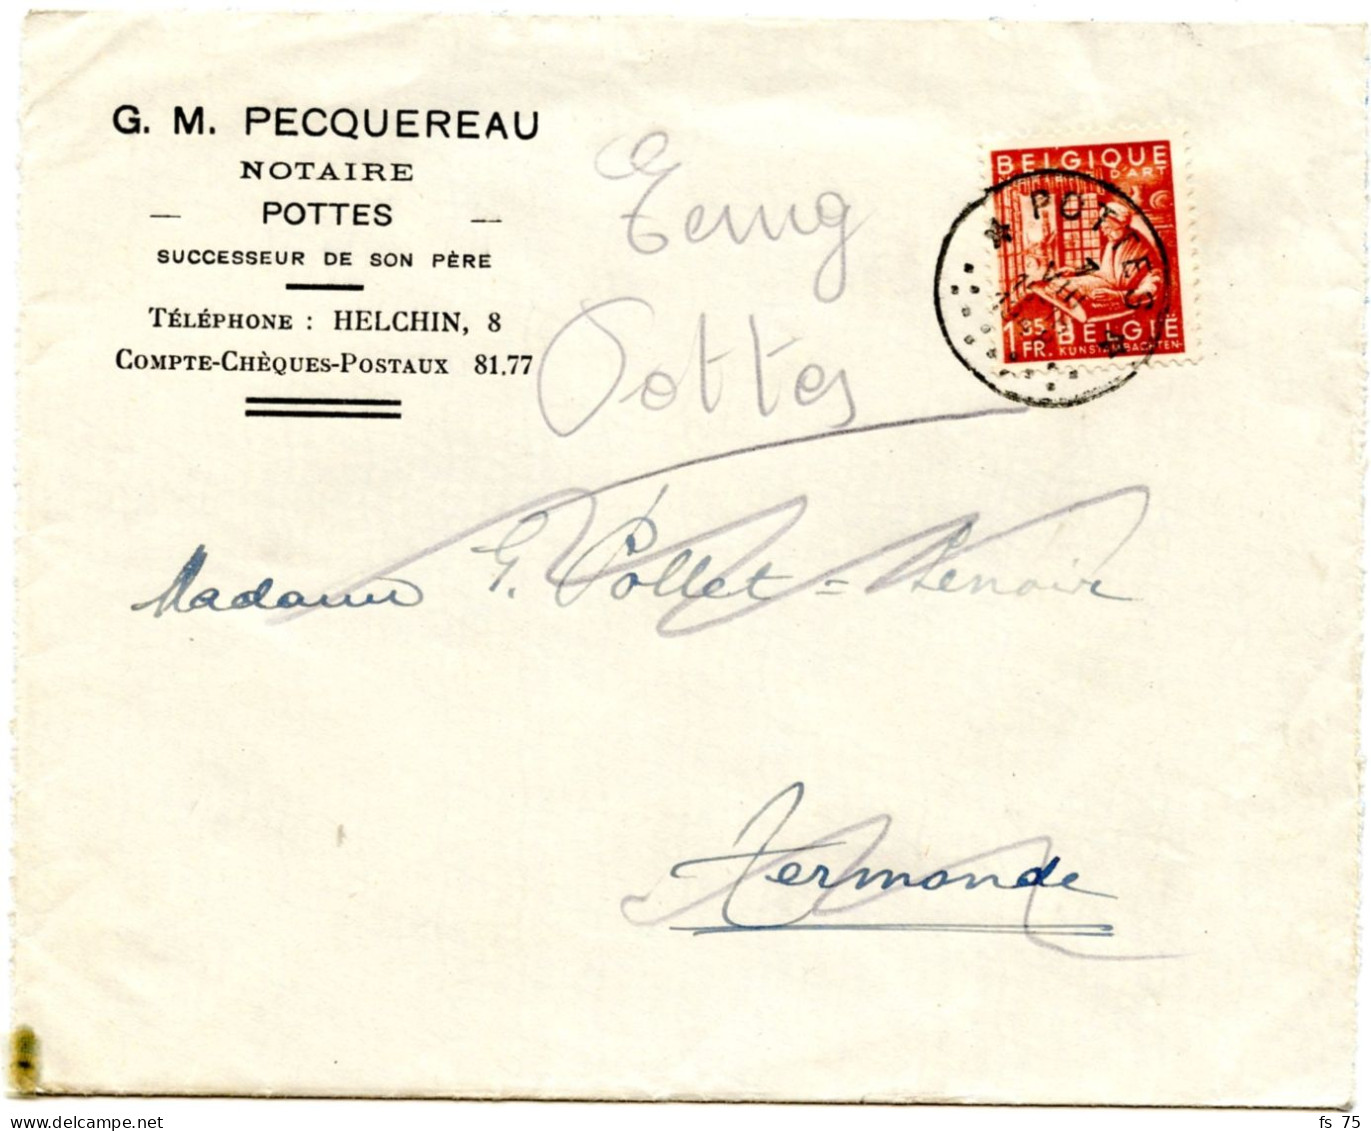 BELGIQUE - COB 762 SIMPLE CERCLE RELAIS A ETOILES POTTES SUR LETTRE, 1948 - Postmarks With Stars